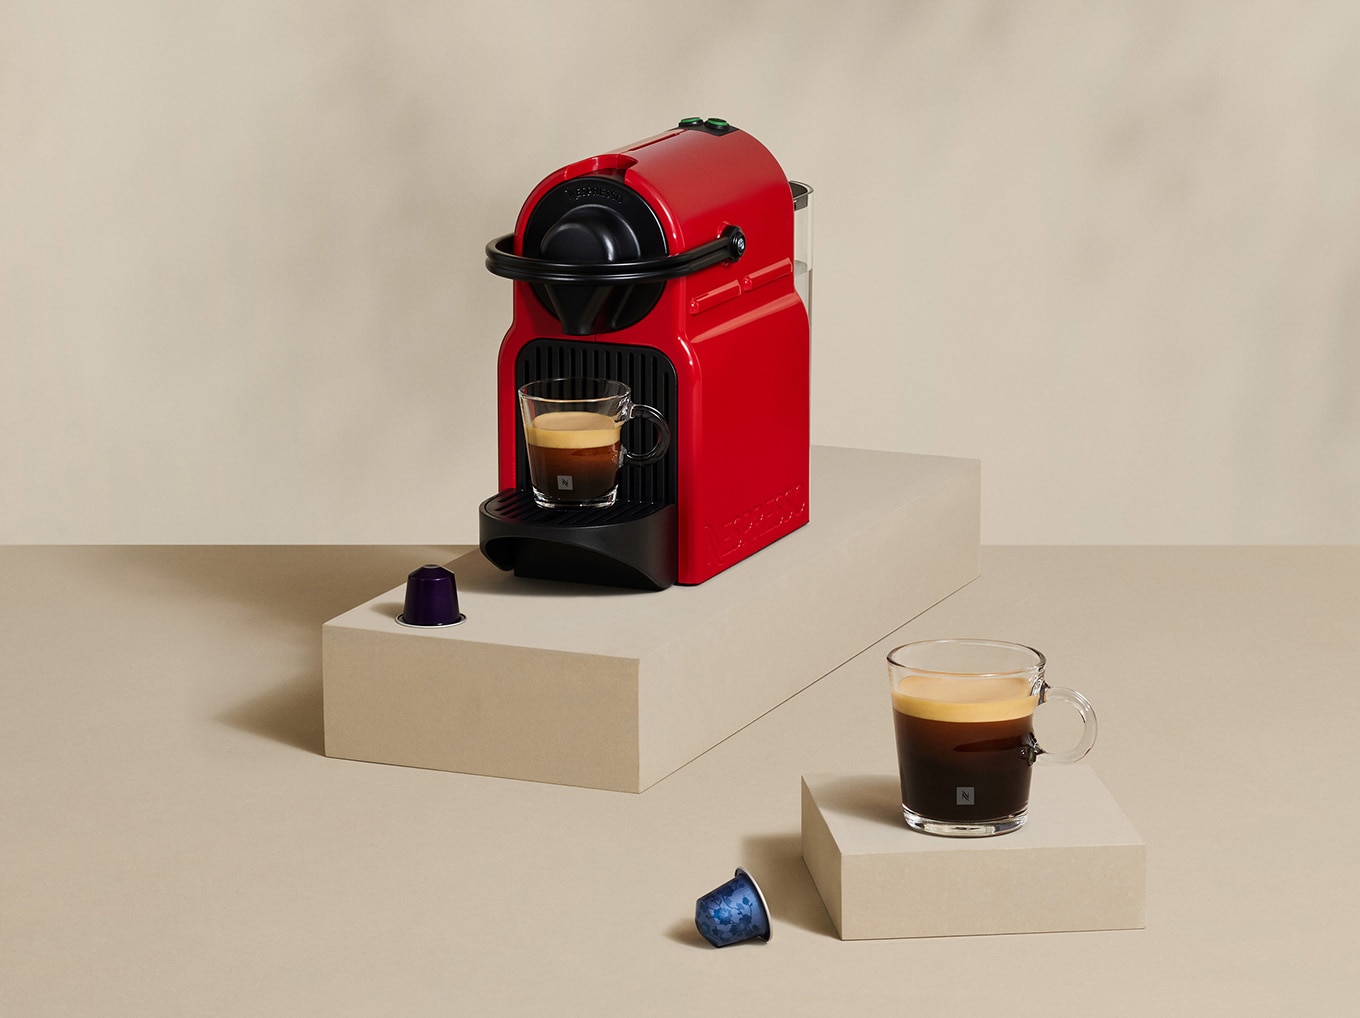 Nespresso Inissia C40 Espresso Coffee Pod Capsule Maker Machine Red